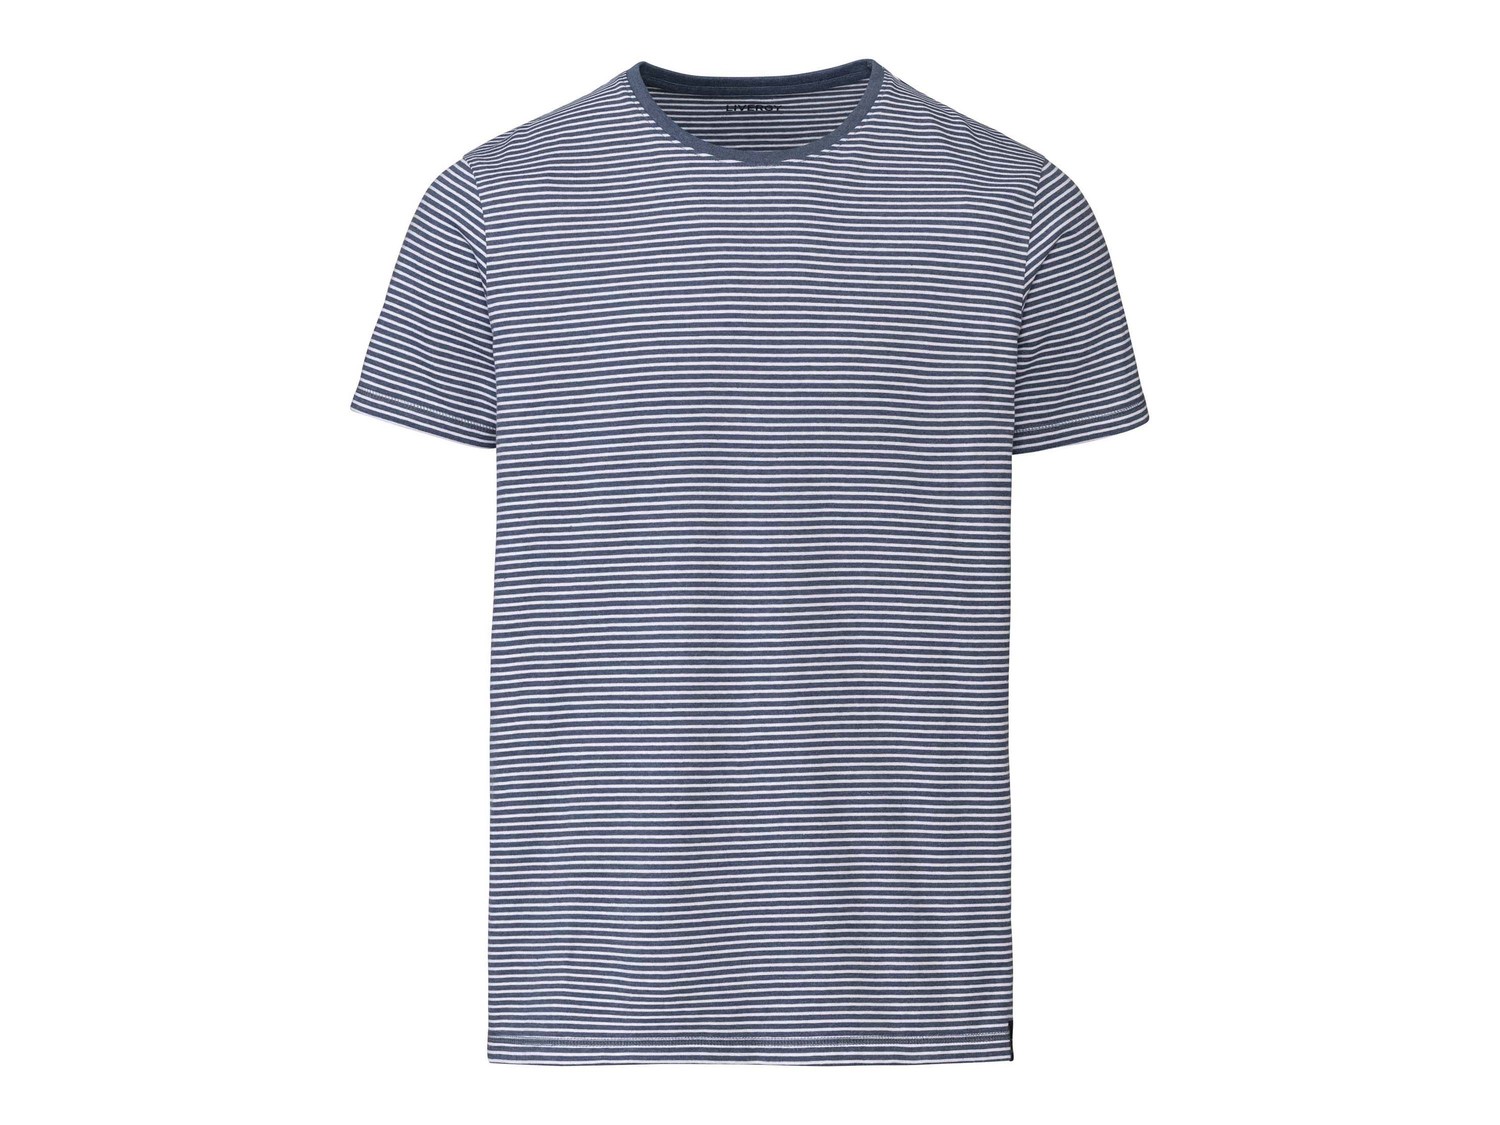 T-shirt Livergy, prezzo 4.99 &#8364;  
Misure: S-XL
- Oeko tex NEW